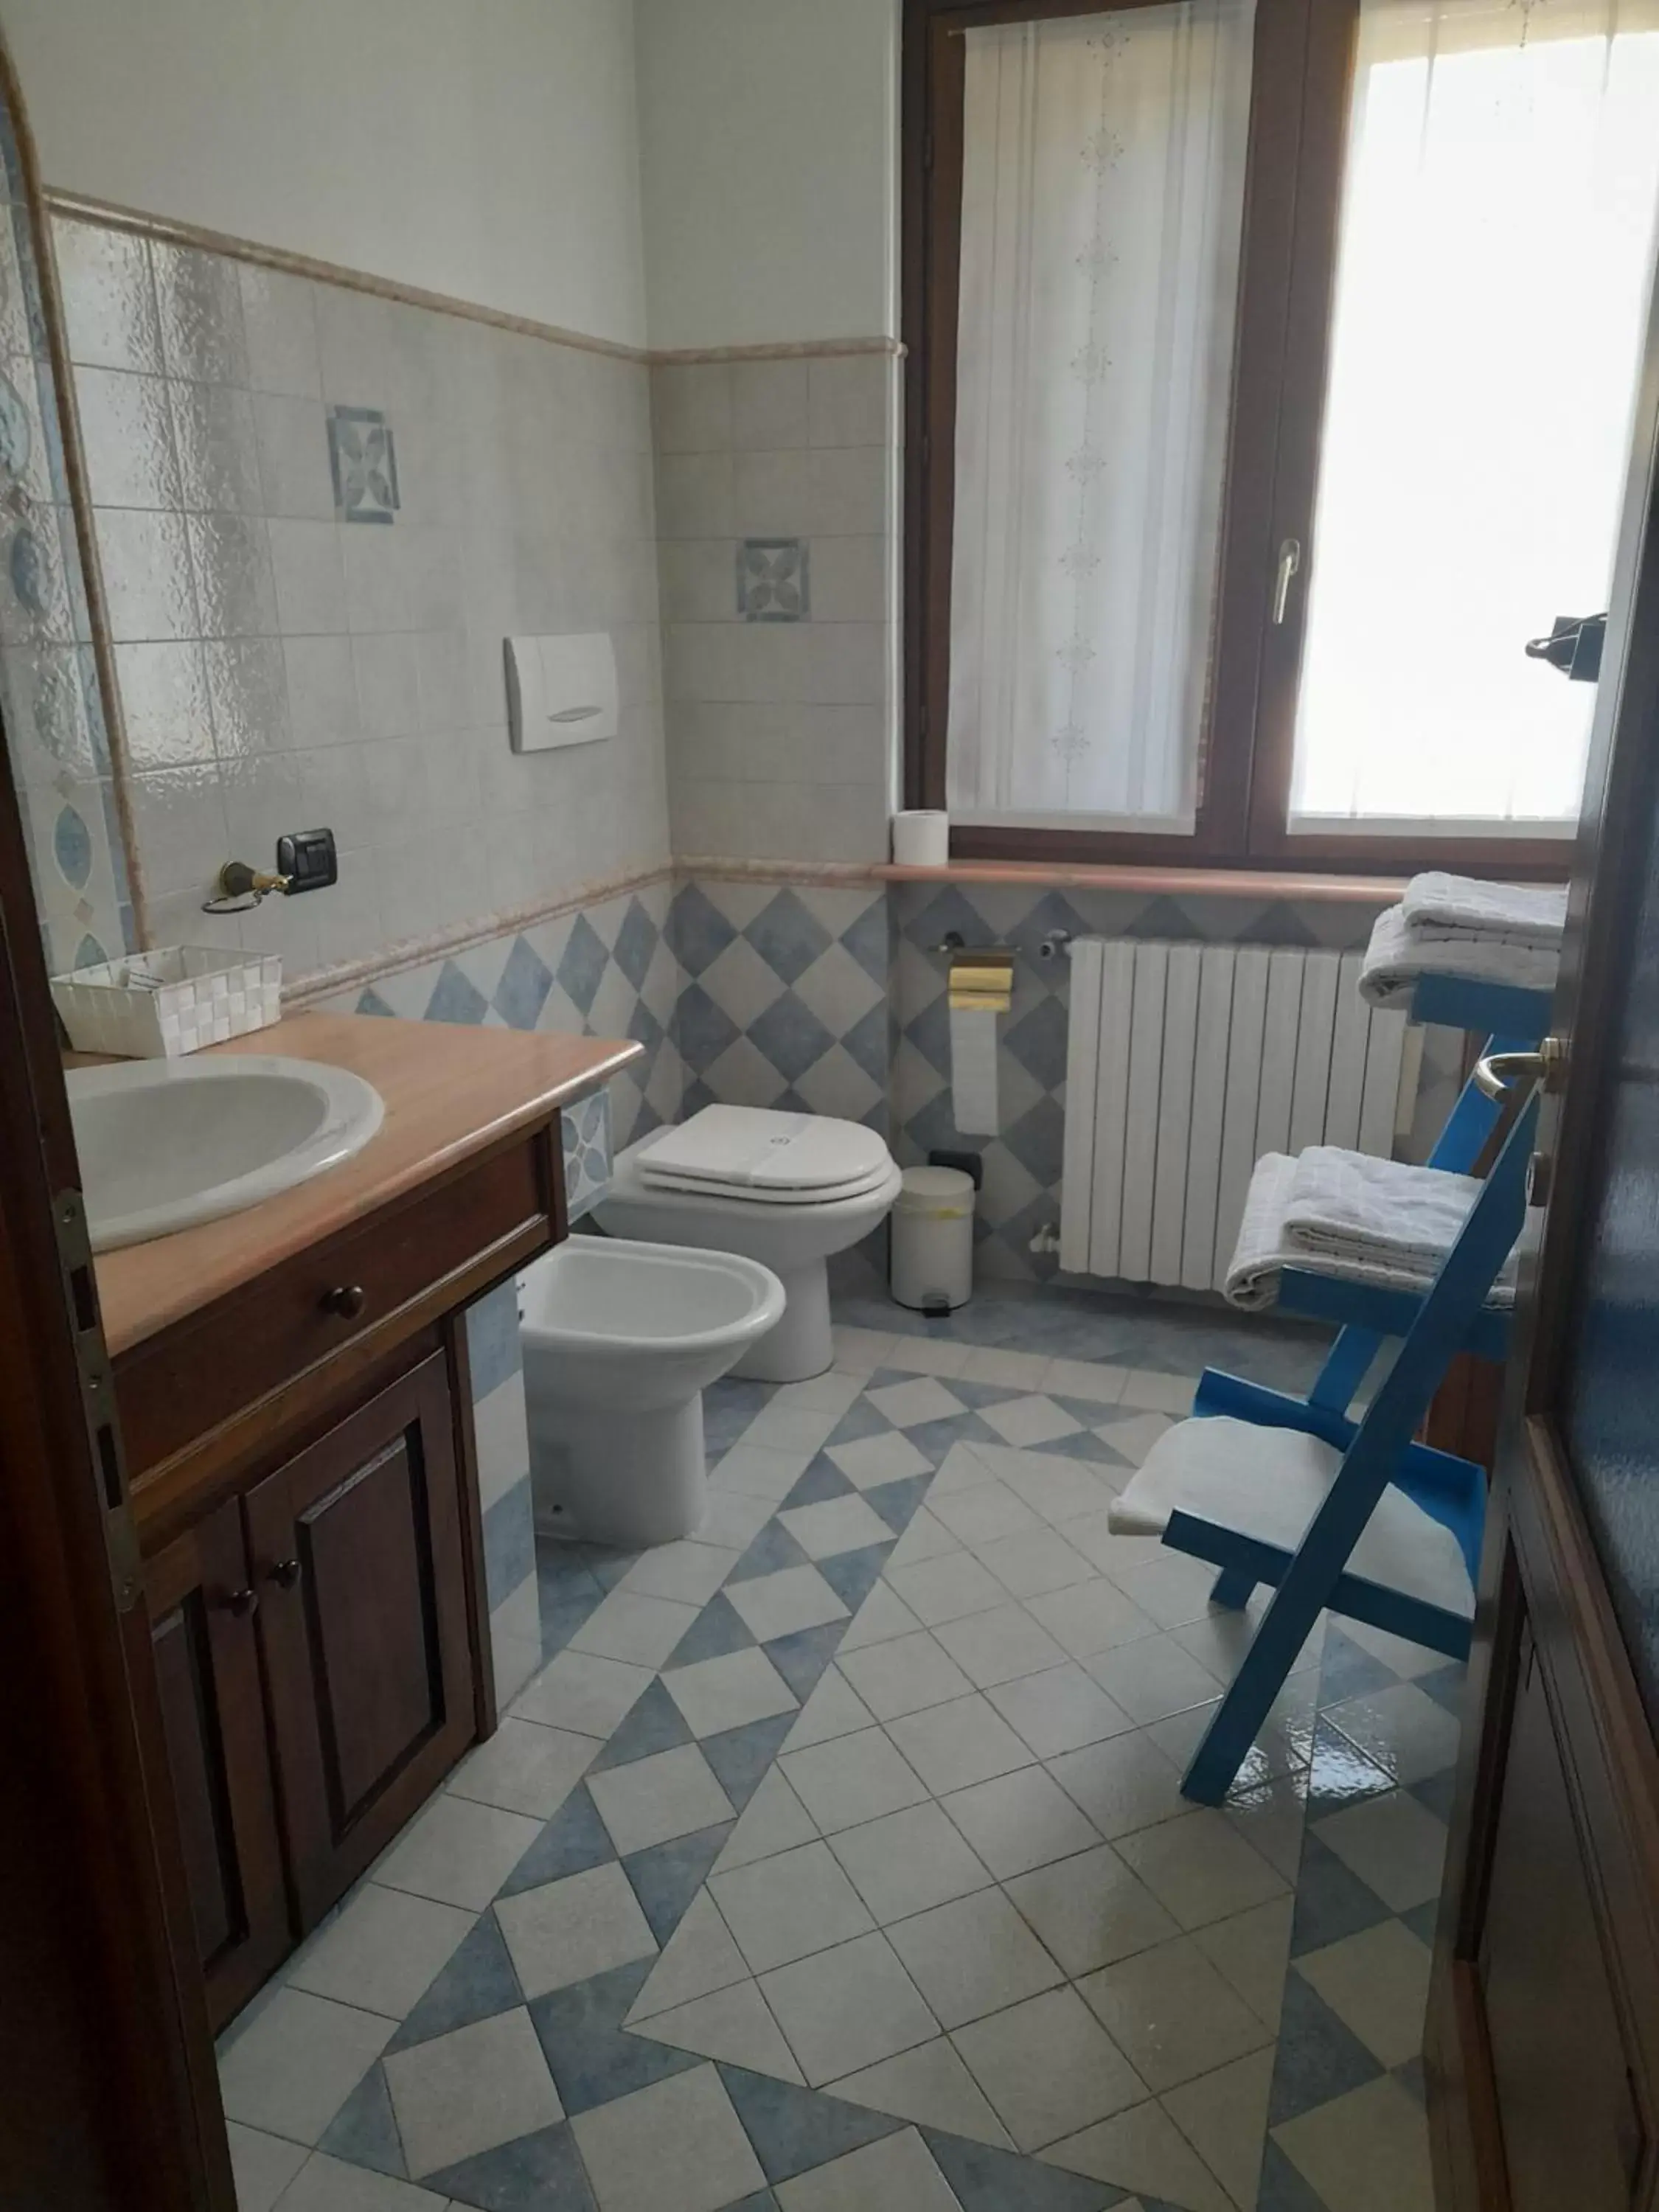 Bathroom in Peropero'